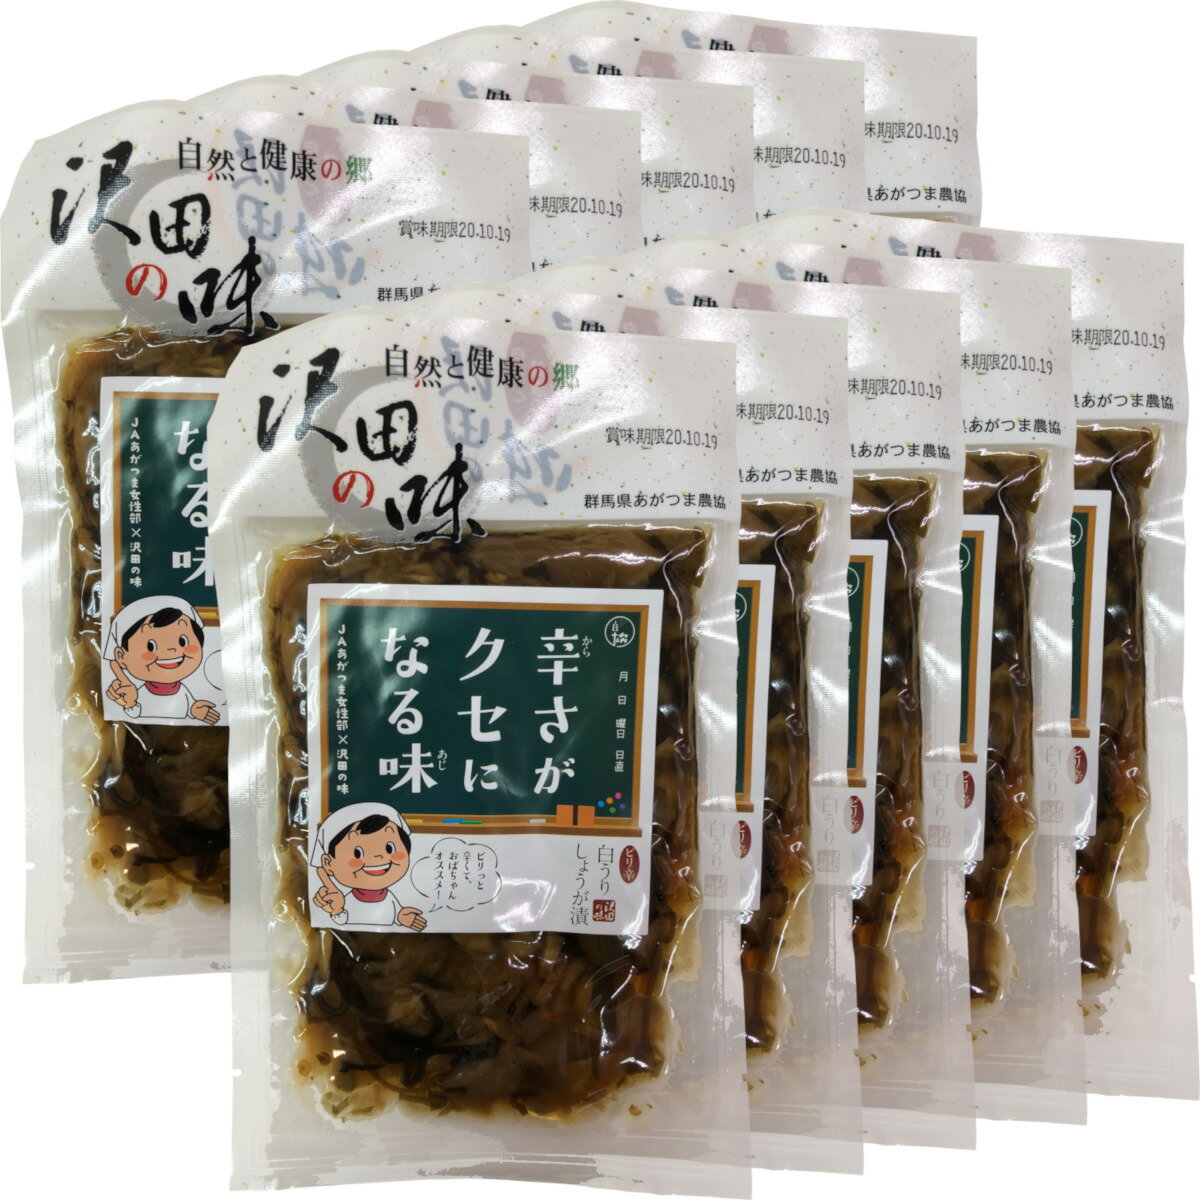 【国産原料使用】沢田の味 ピリ辛白うりしょうが漬 10